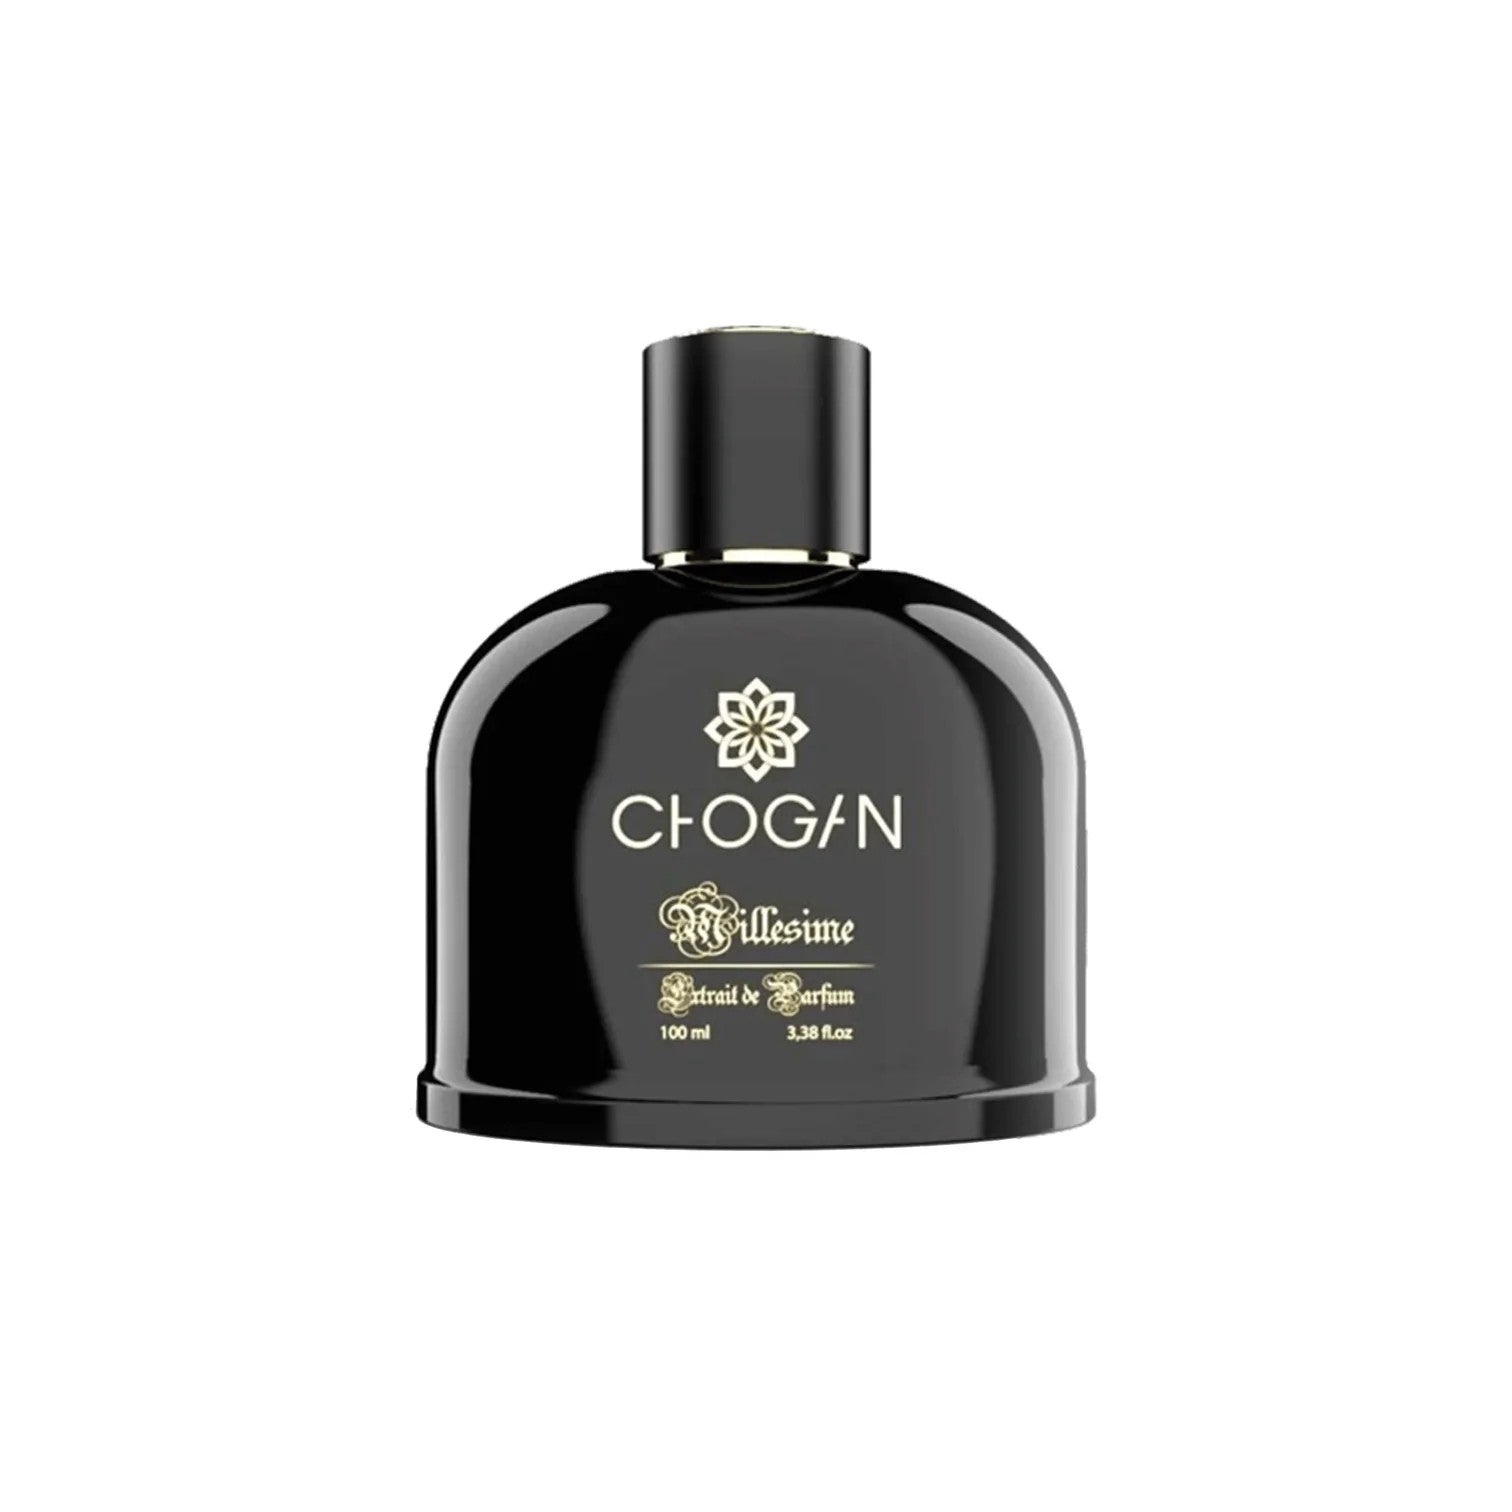 Unisex Parfüm - Chogan Nr. 73 **Himalaya** - Sparfüm - Home of Fragrances